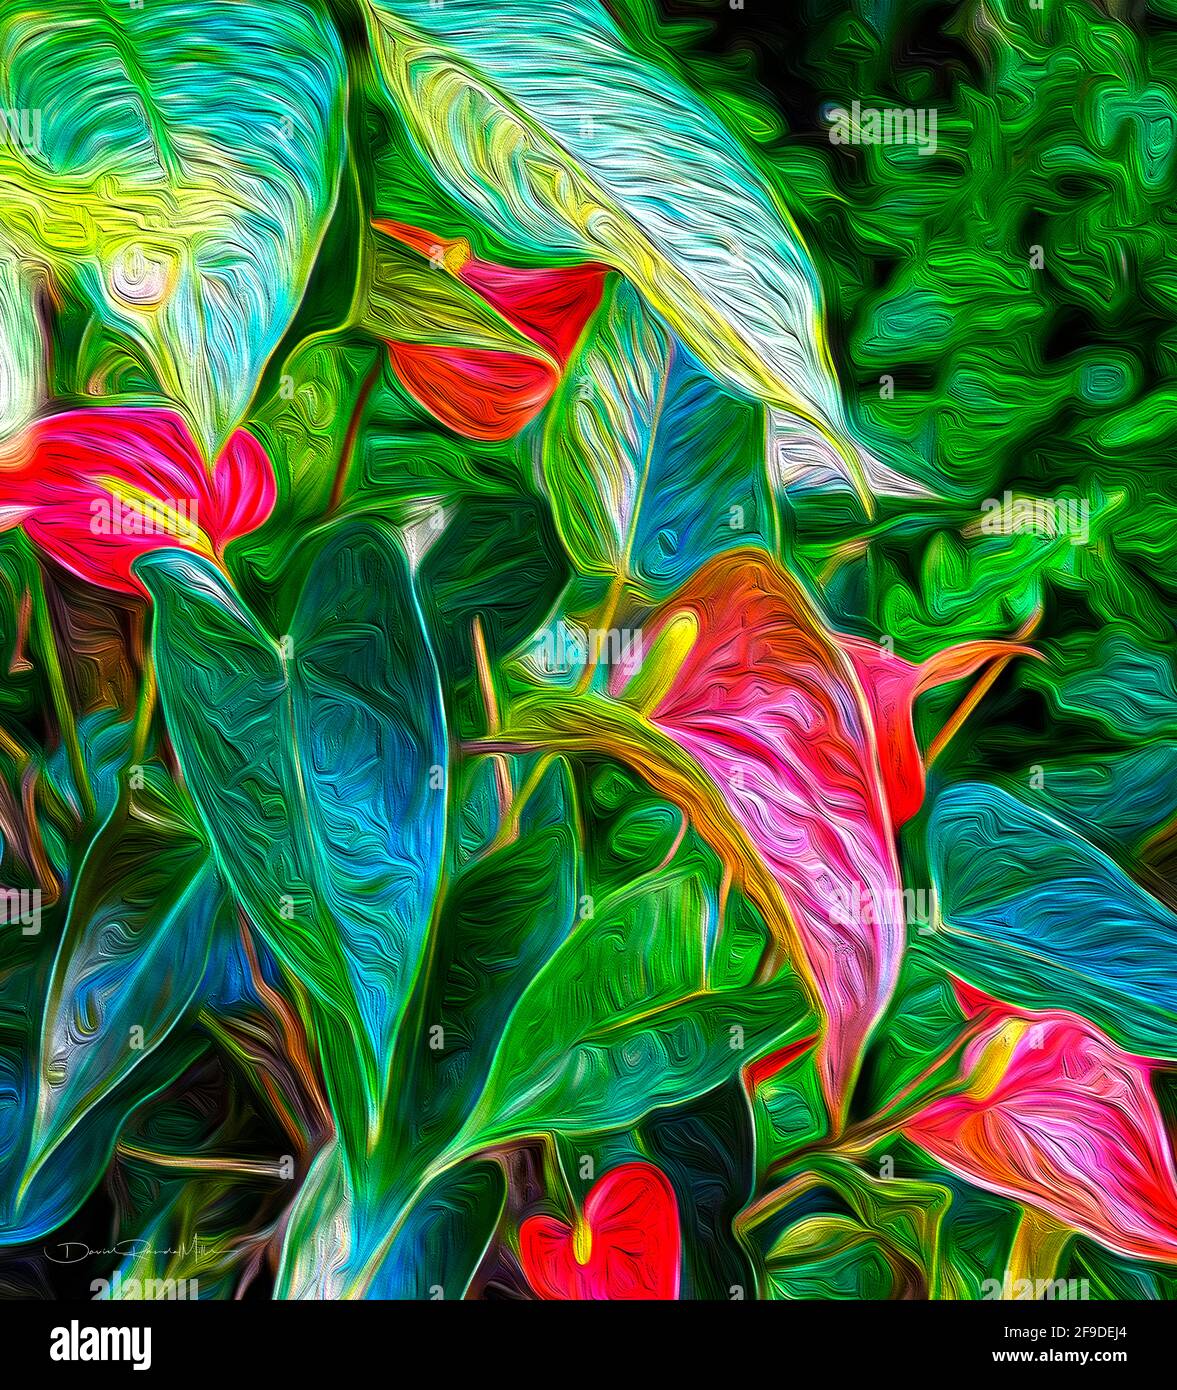 Dies ist ein wunderschönes, hochwertiges Kunstwerk aus Anthurien, das in einem tropischen Garten wächst. Die Abmessungen betragen 28.444 Zoll (72.25 cm) x 16.625 Zoll (42.23 cm). Der Stockfoto